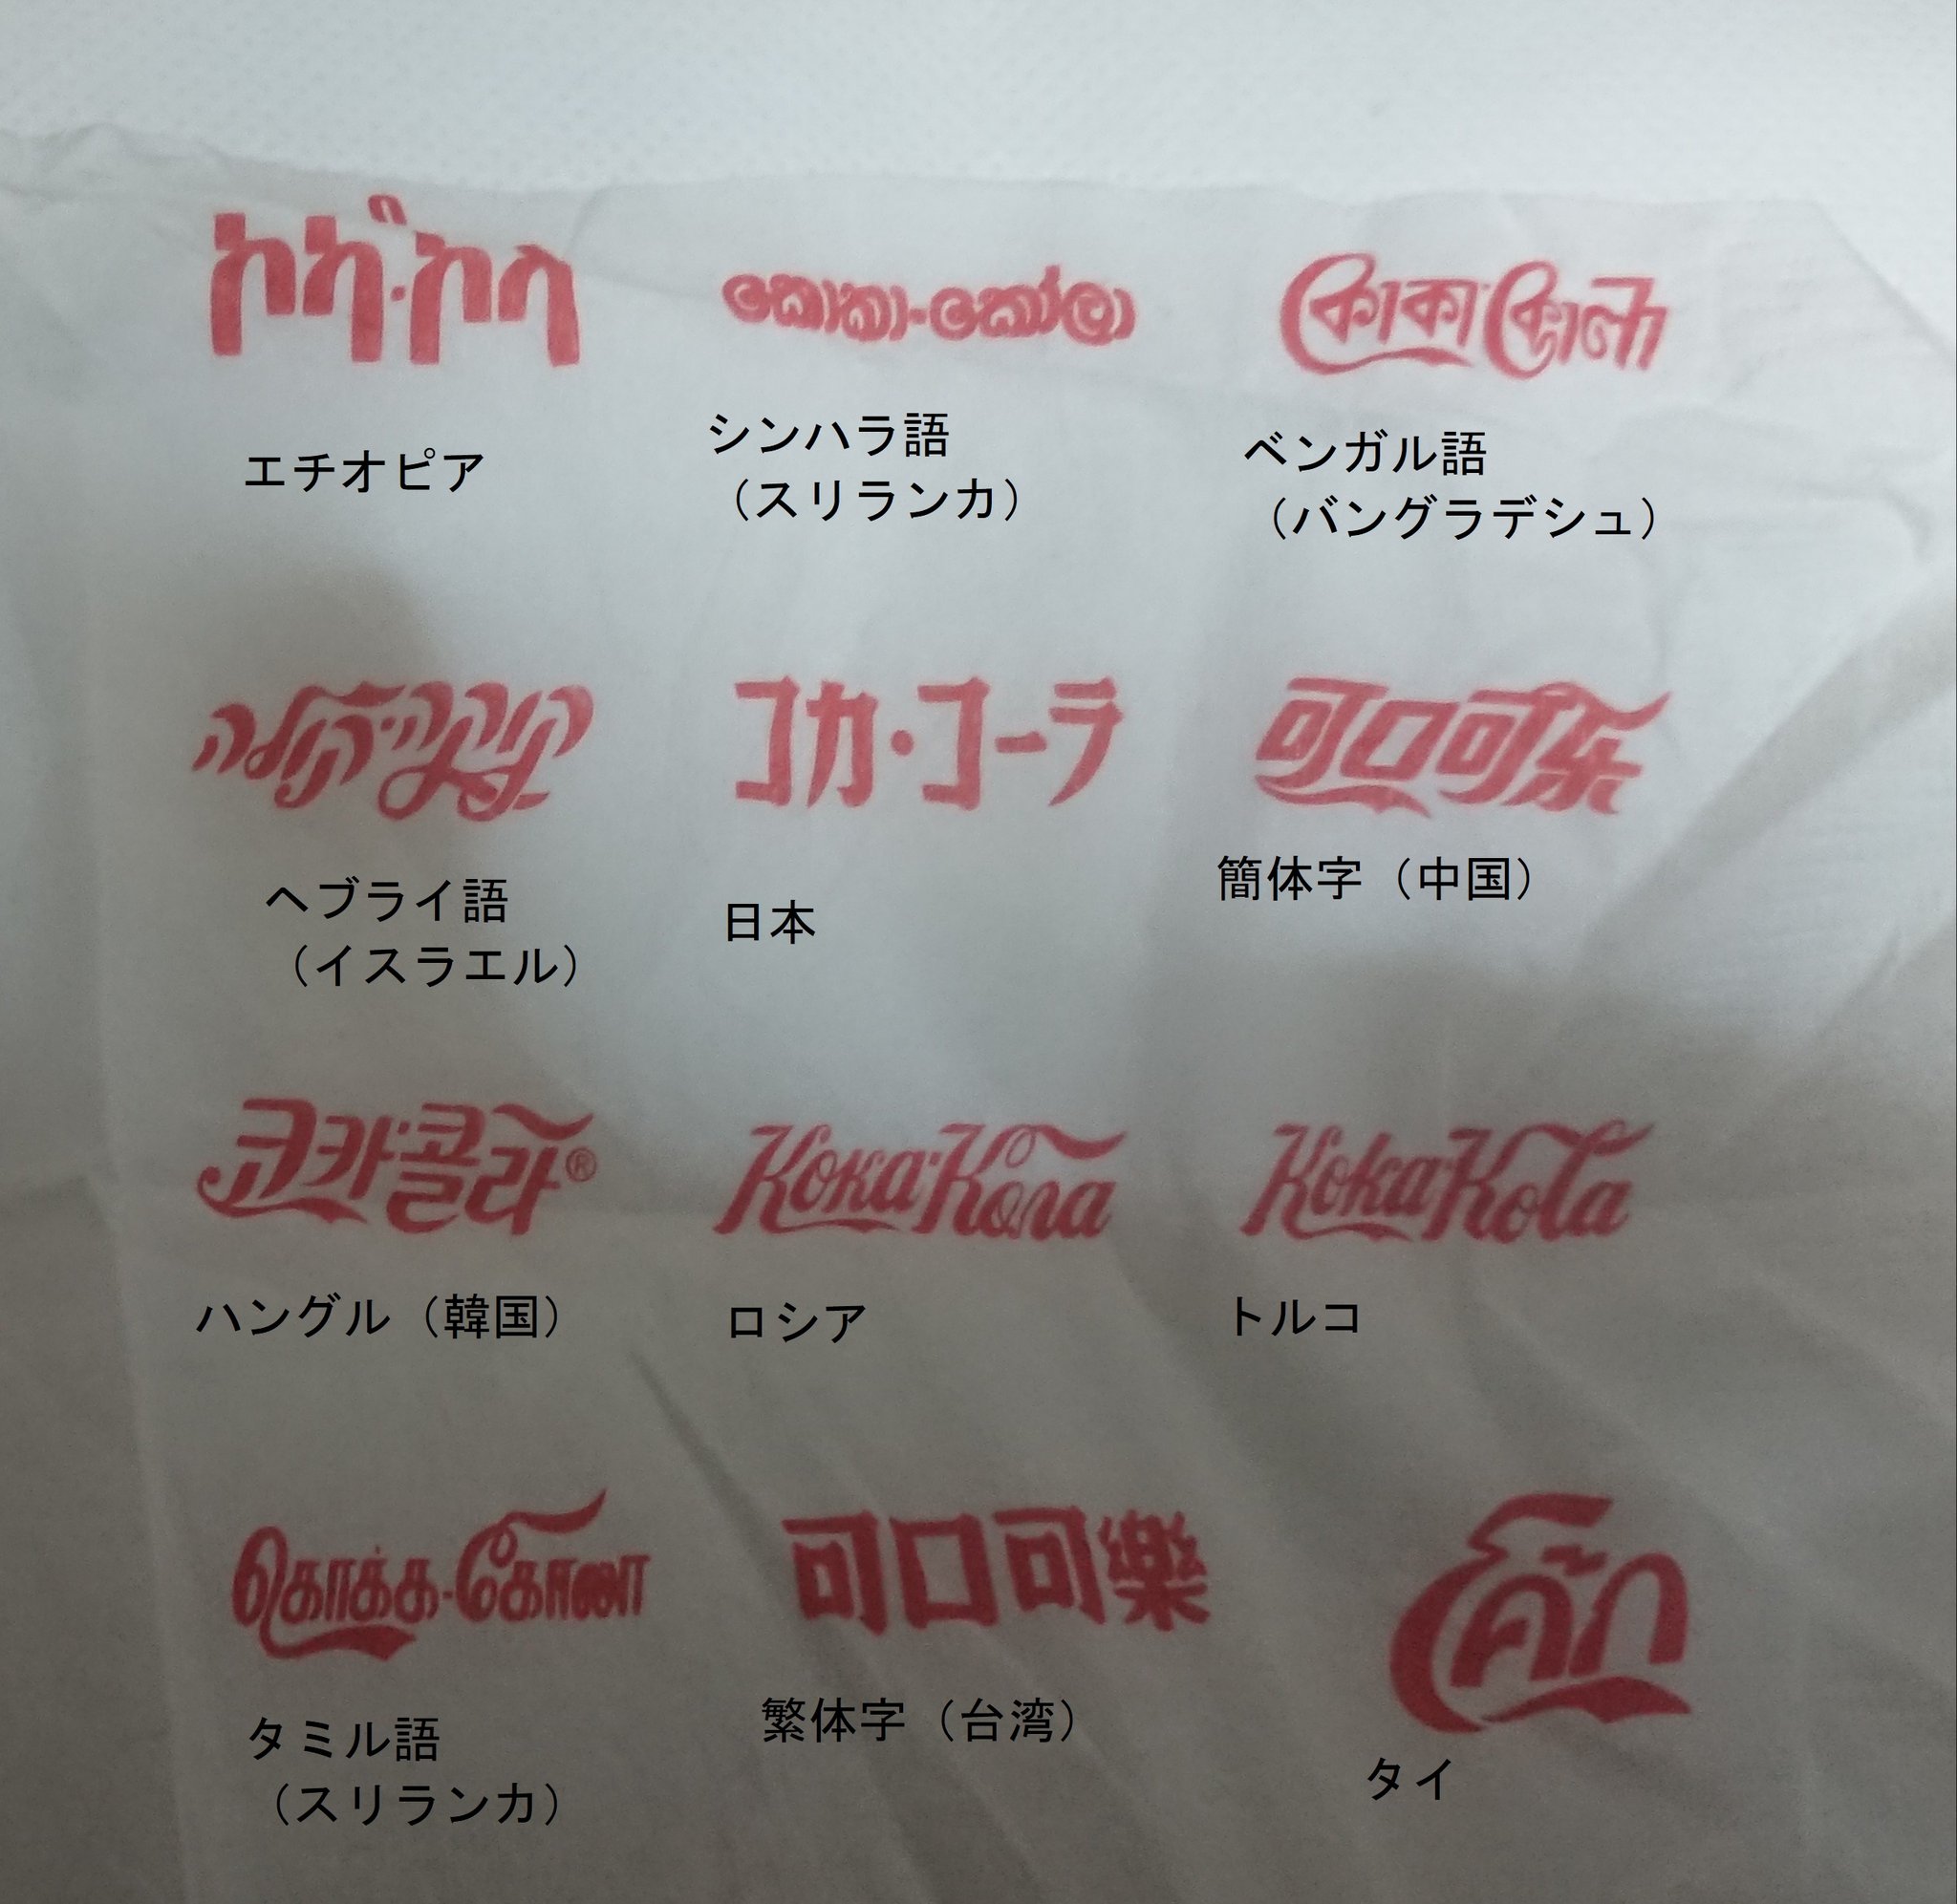 Ba Hiro 世界各国の コカ コーラ 表記が判明しました コカ コーラ コカコーラ T Co 9ij8y3pspb Twitter